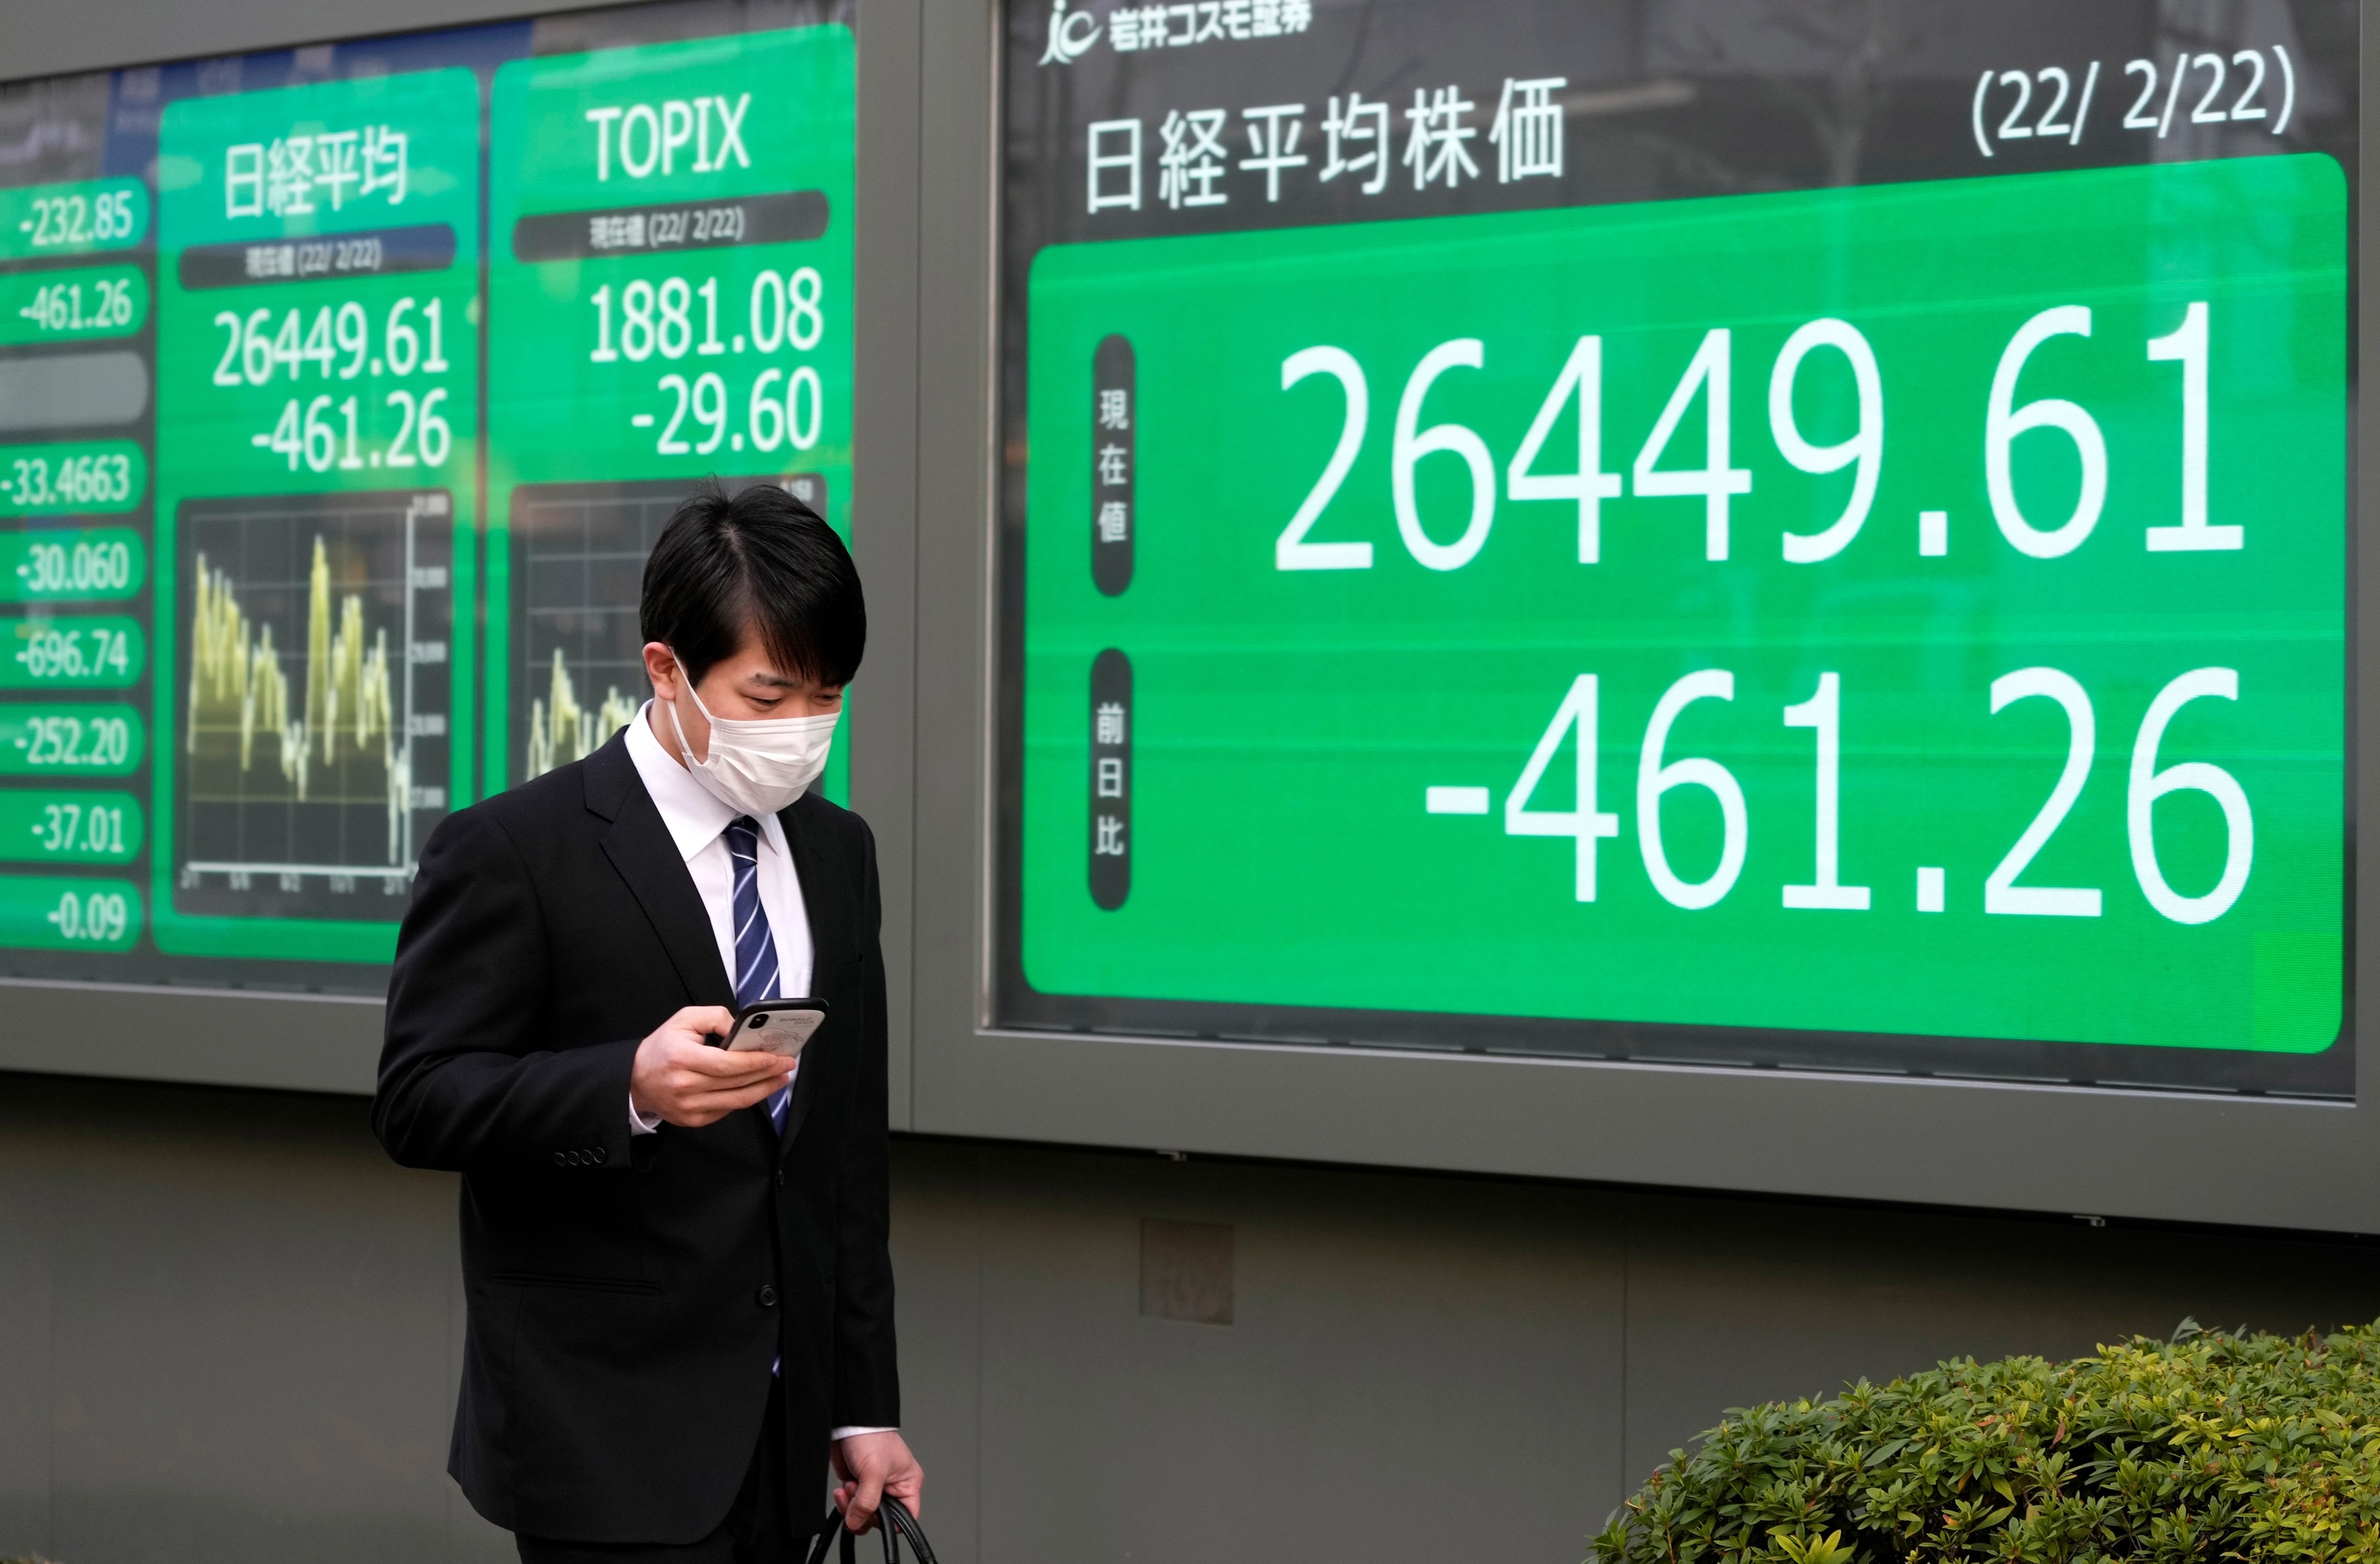 La bolsa de Tokio perdió 461,26 puntos, o un 1,71% al cierre.